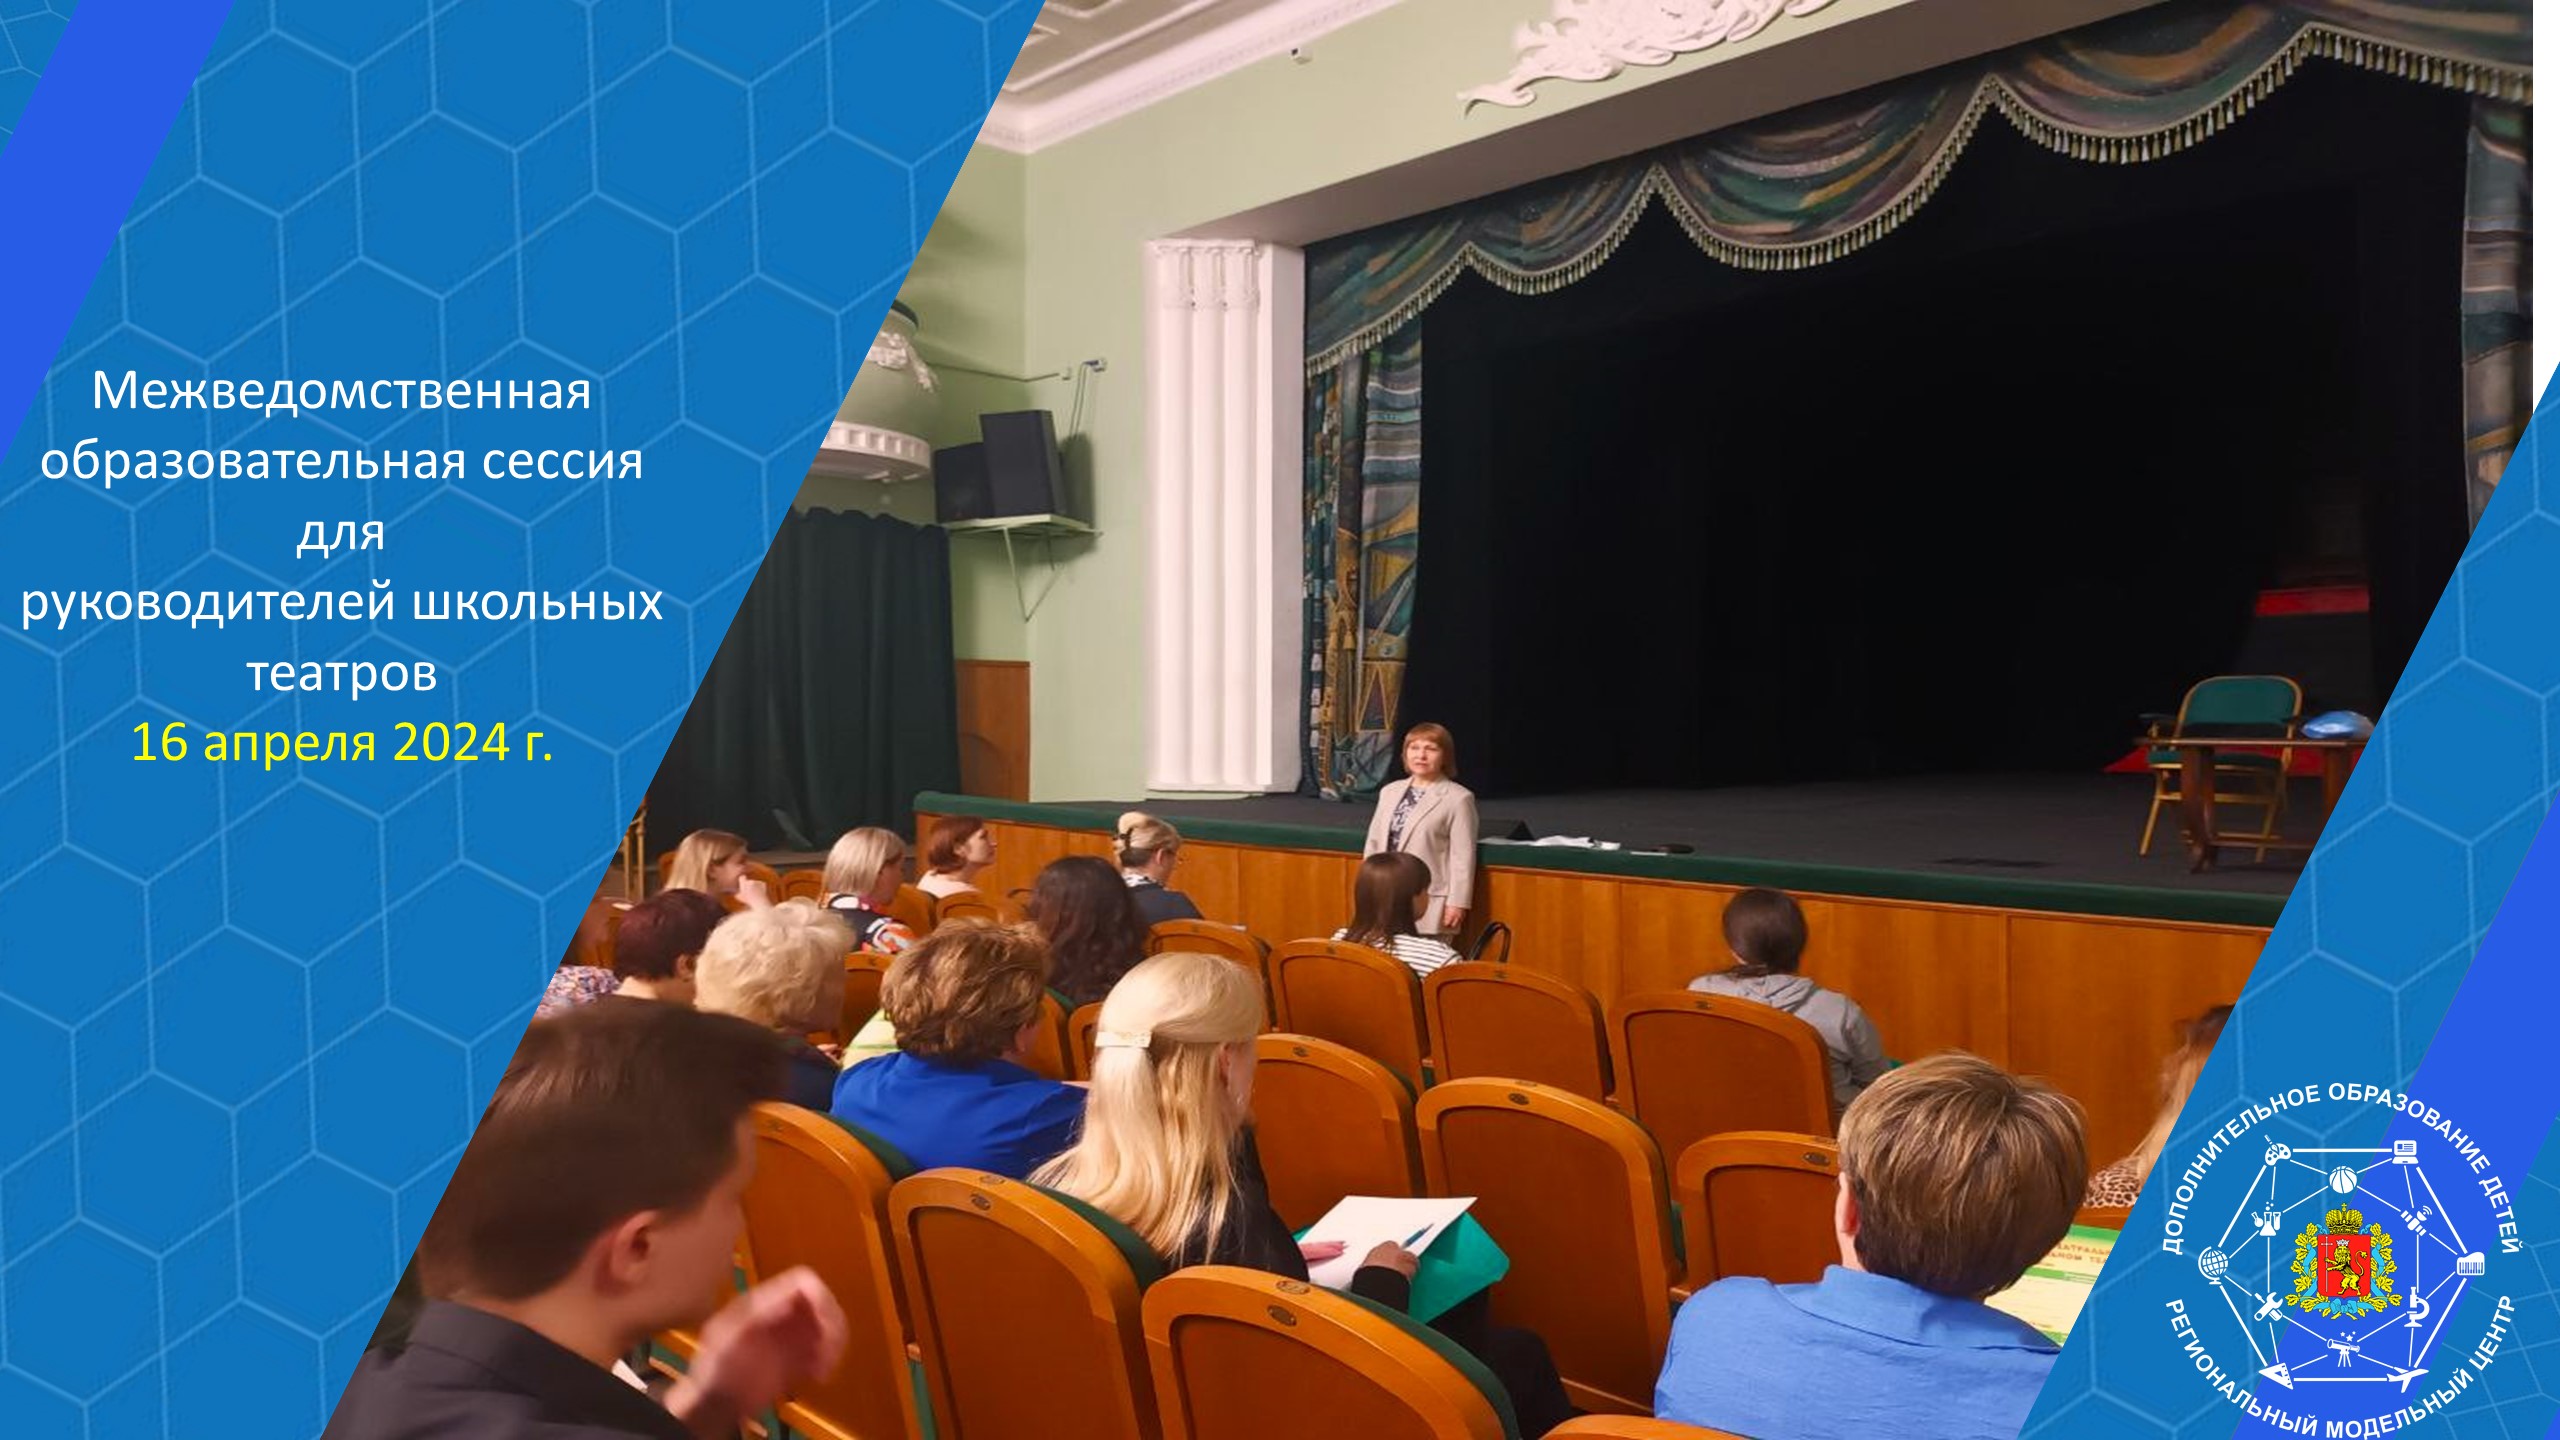 Межведомственная образовательная сессия для руководителей школьных театров стартовала сегодня во Владимире!